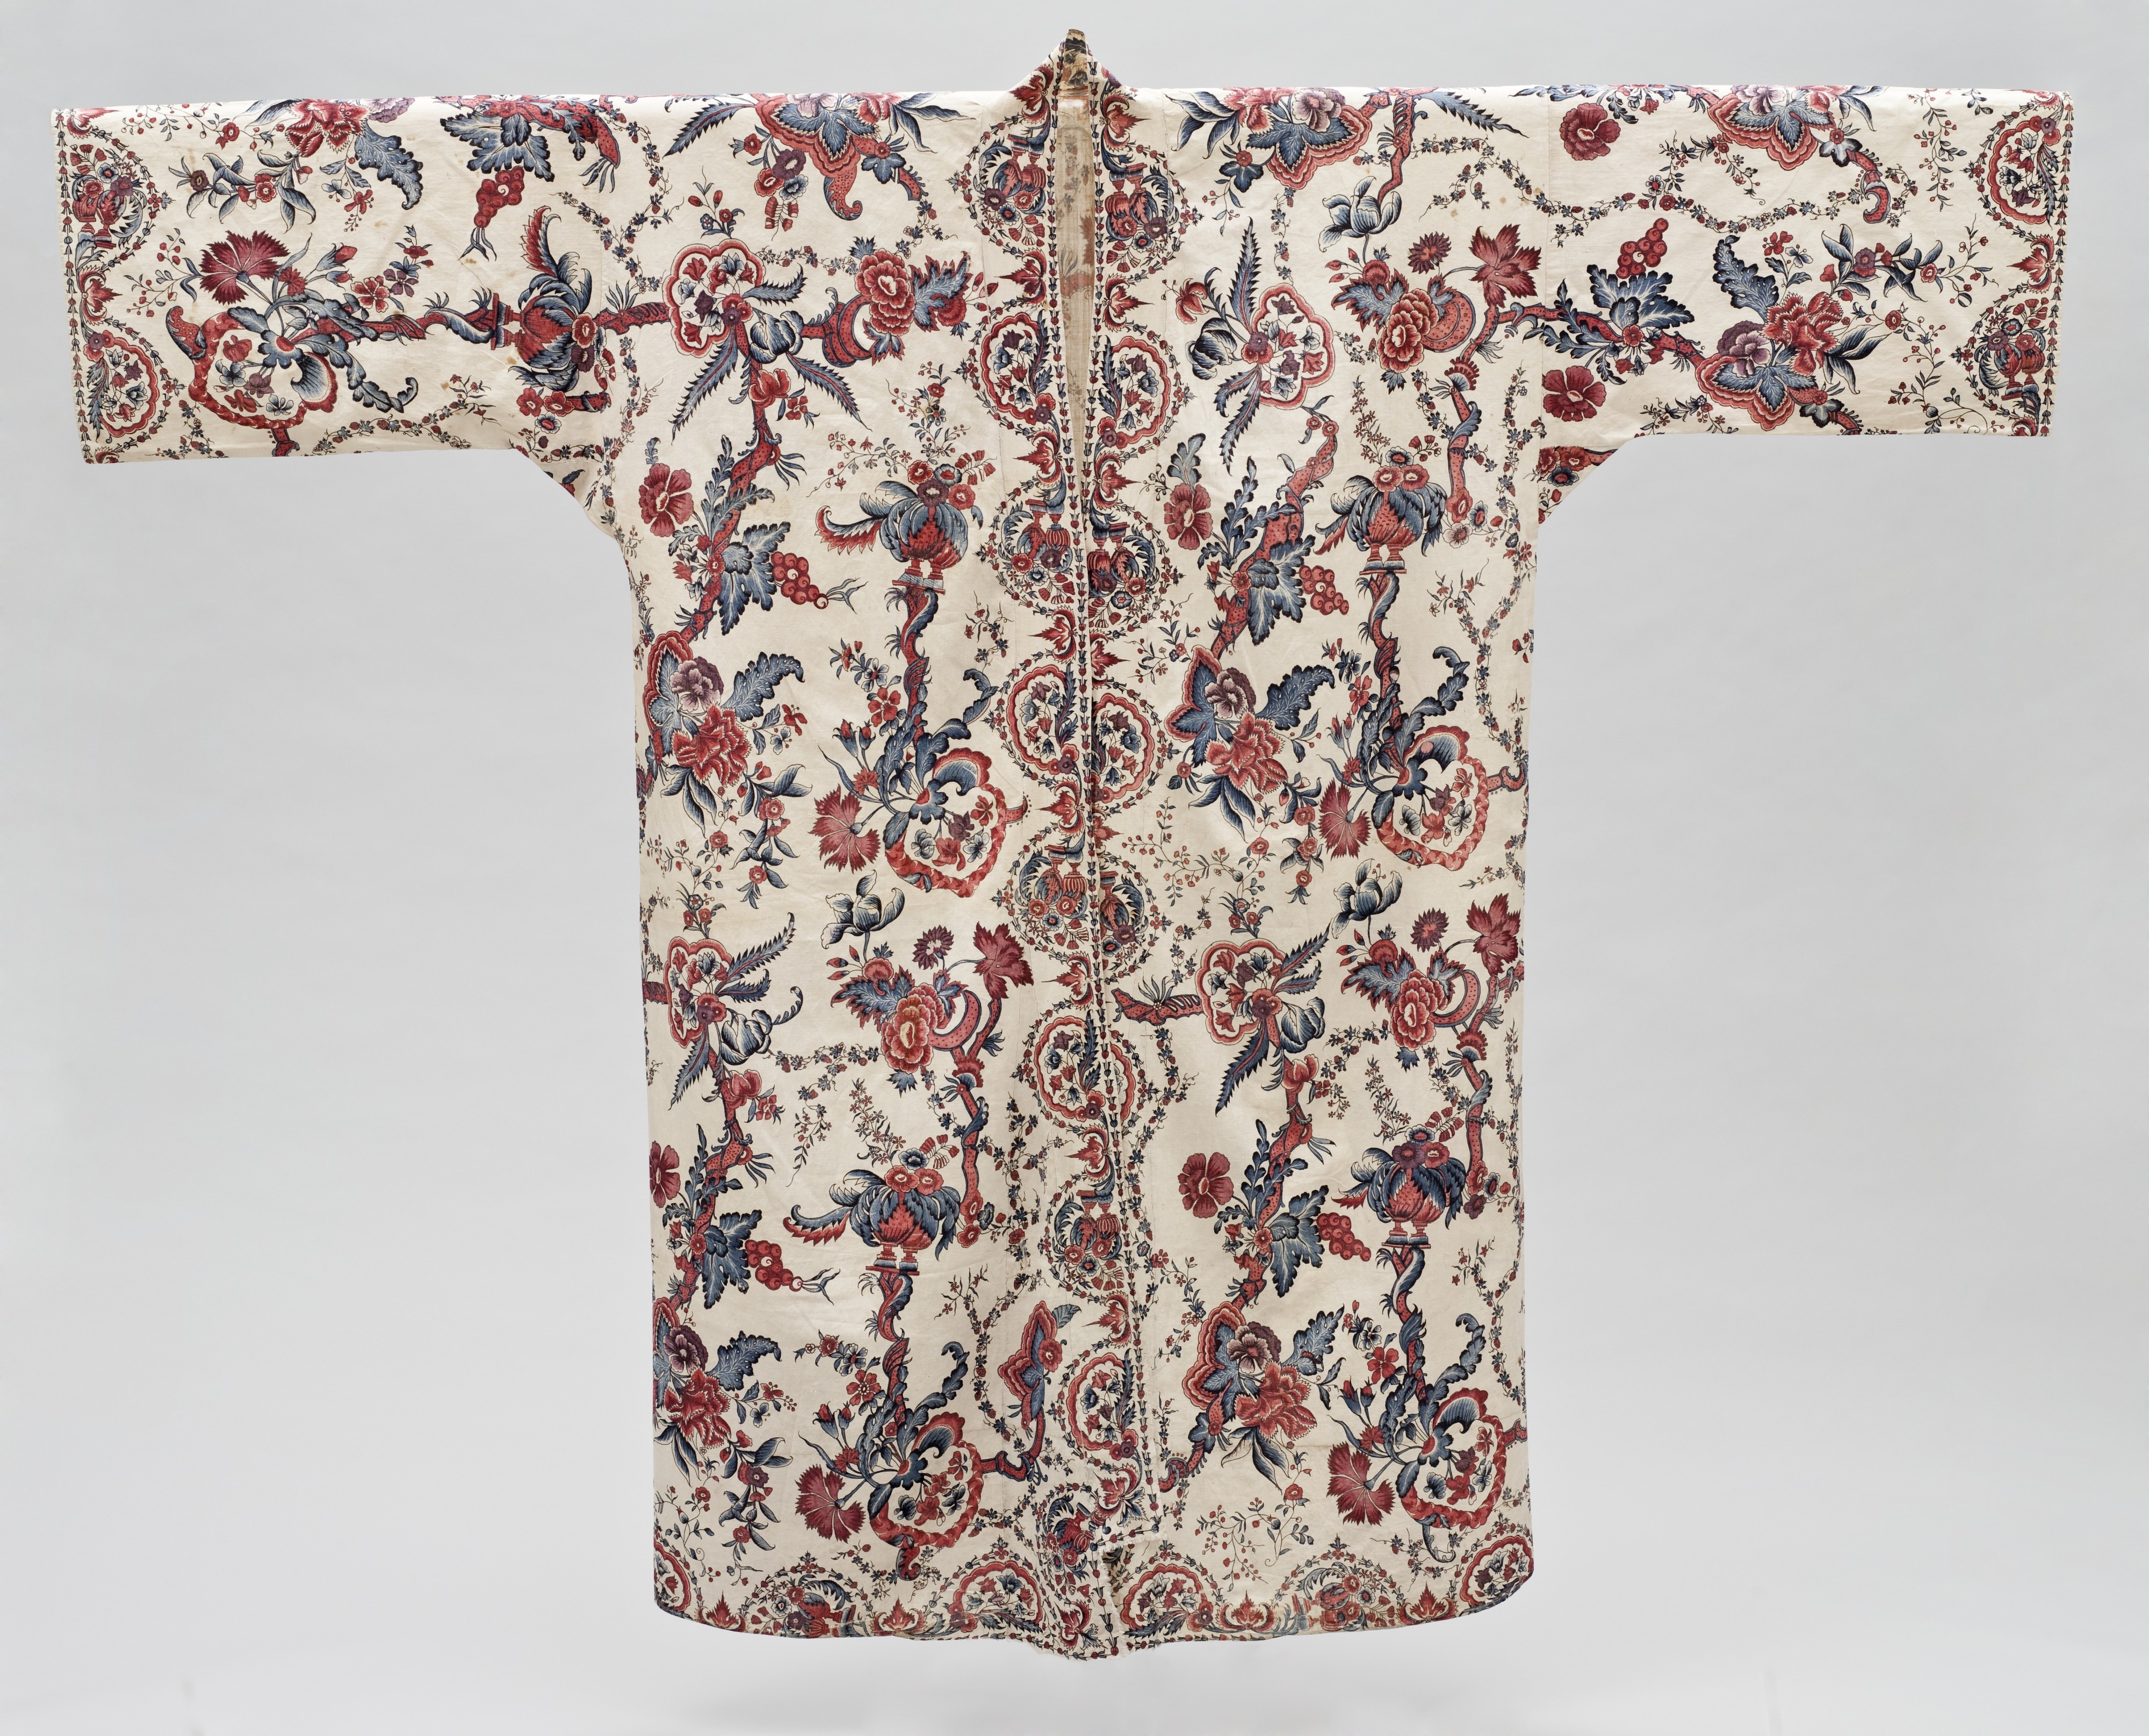 Man's banyan or at-home robe 1700-1750